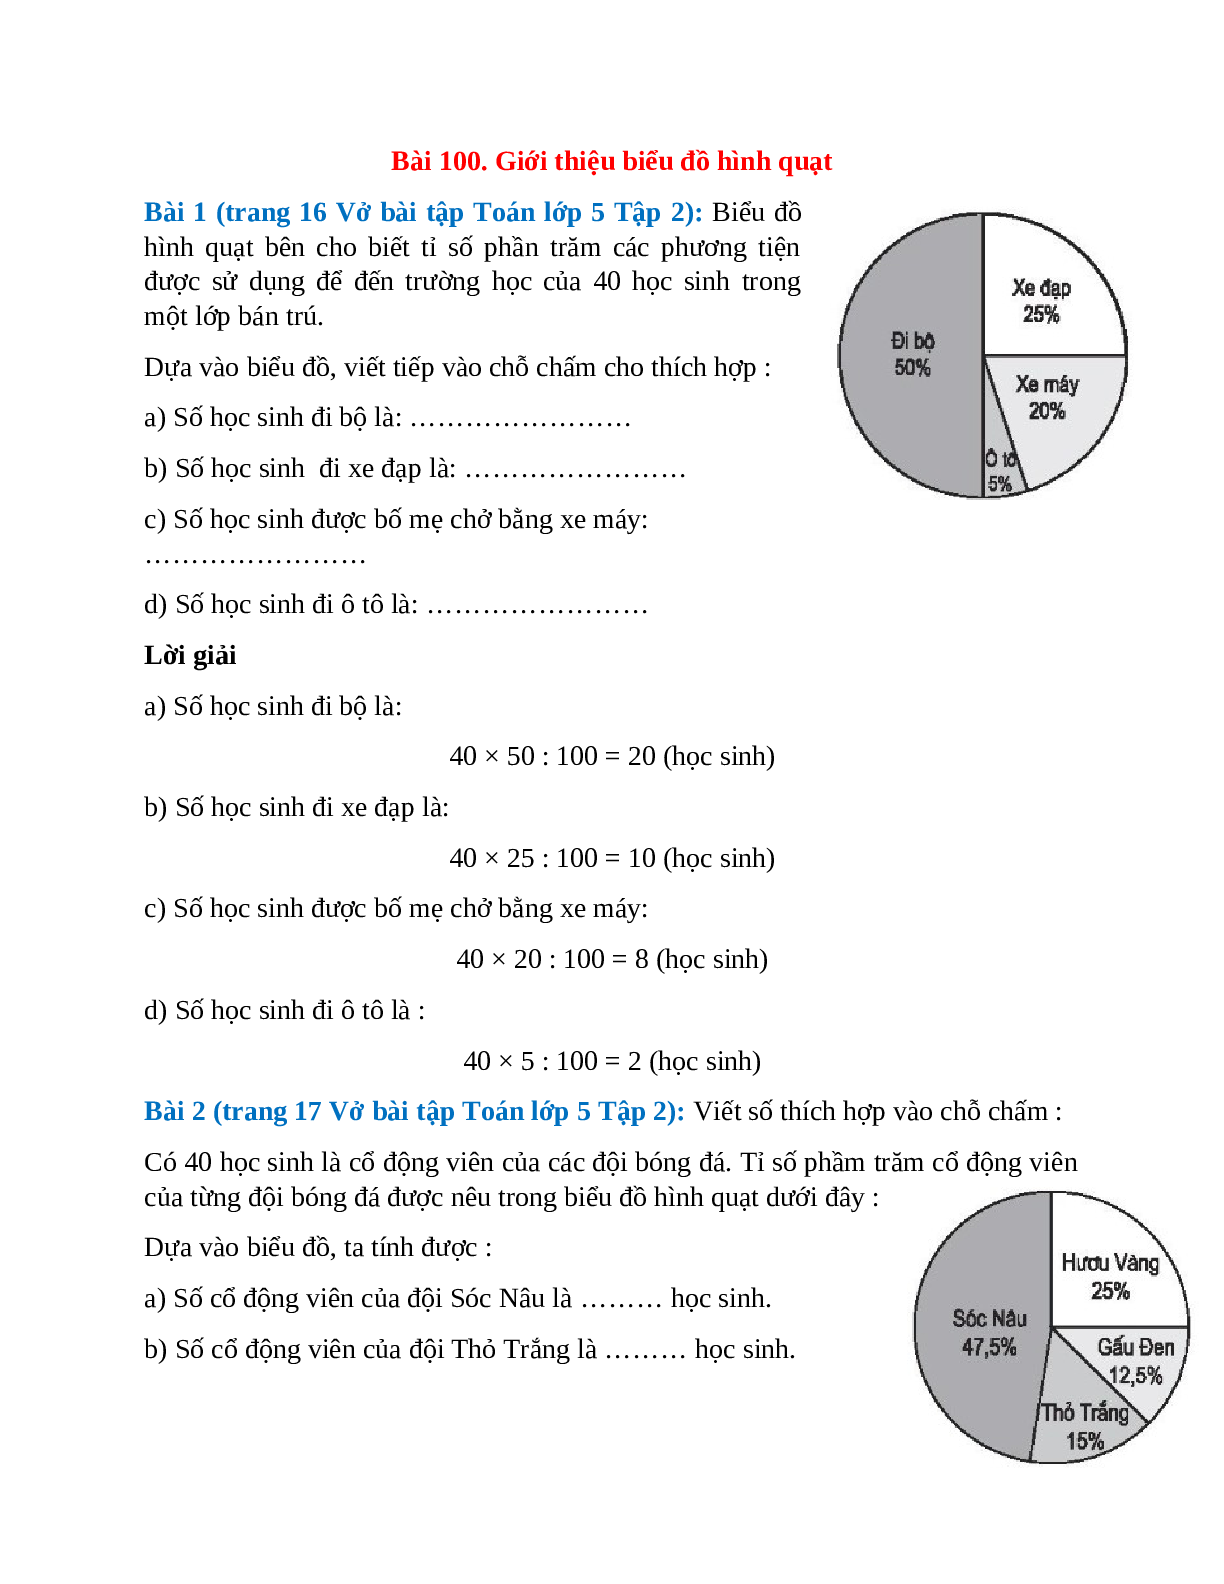 Vở bài tập Toán lớp 5 Tập 2 trang 16, 17 Bài 100: Giới thiệu biểu đồ hình quạt (trang 1)